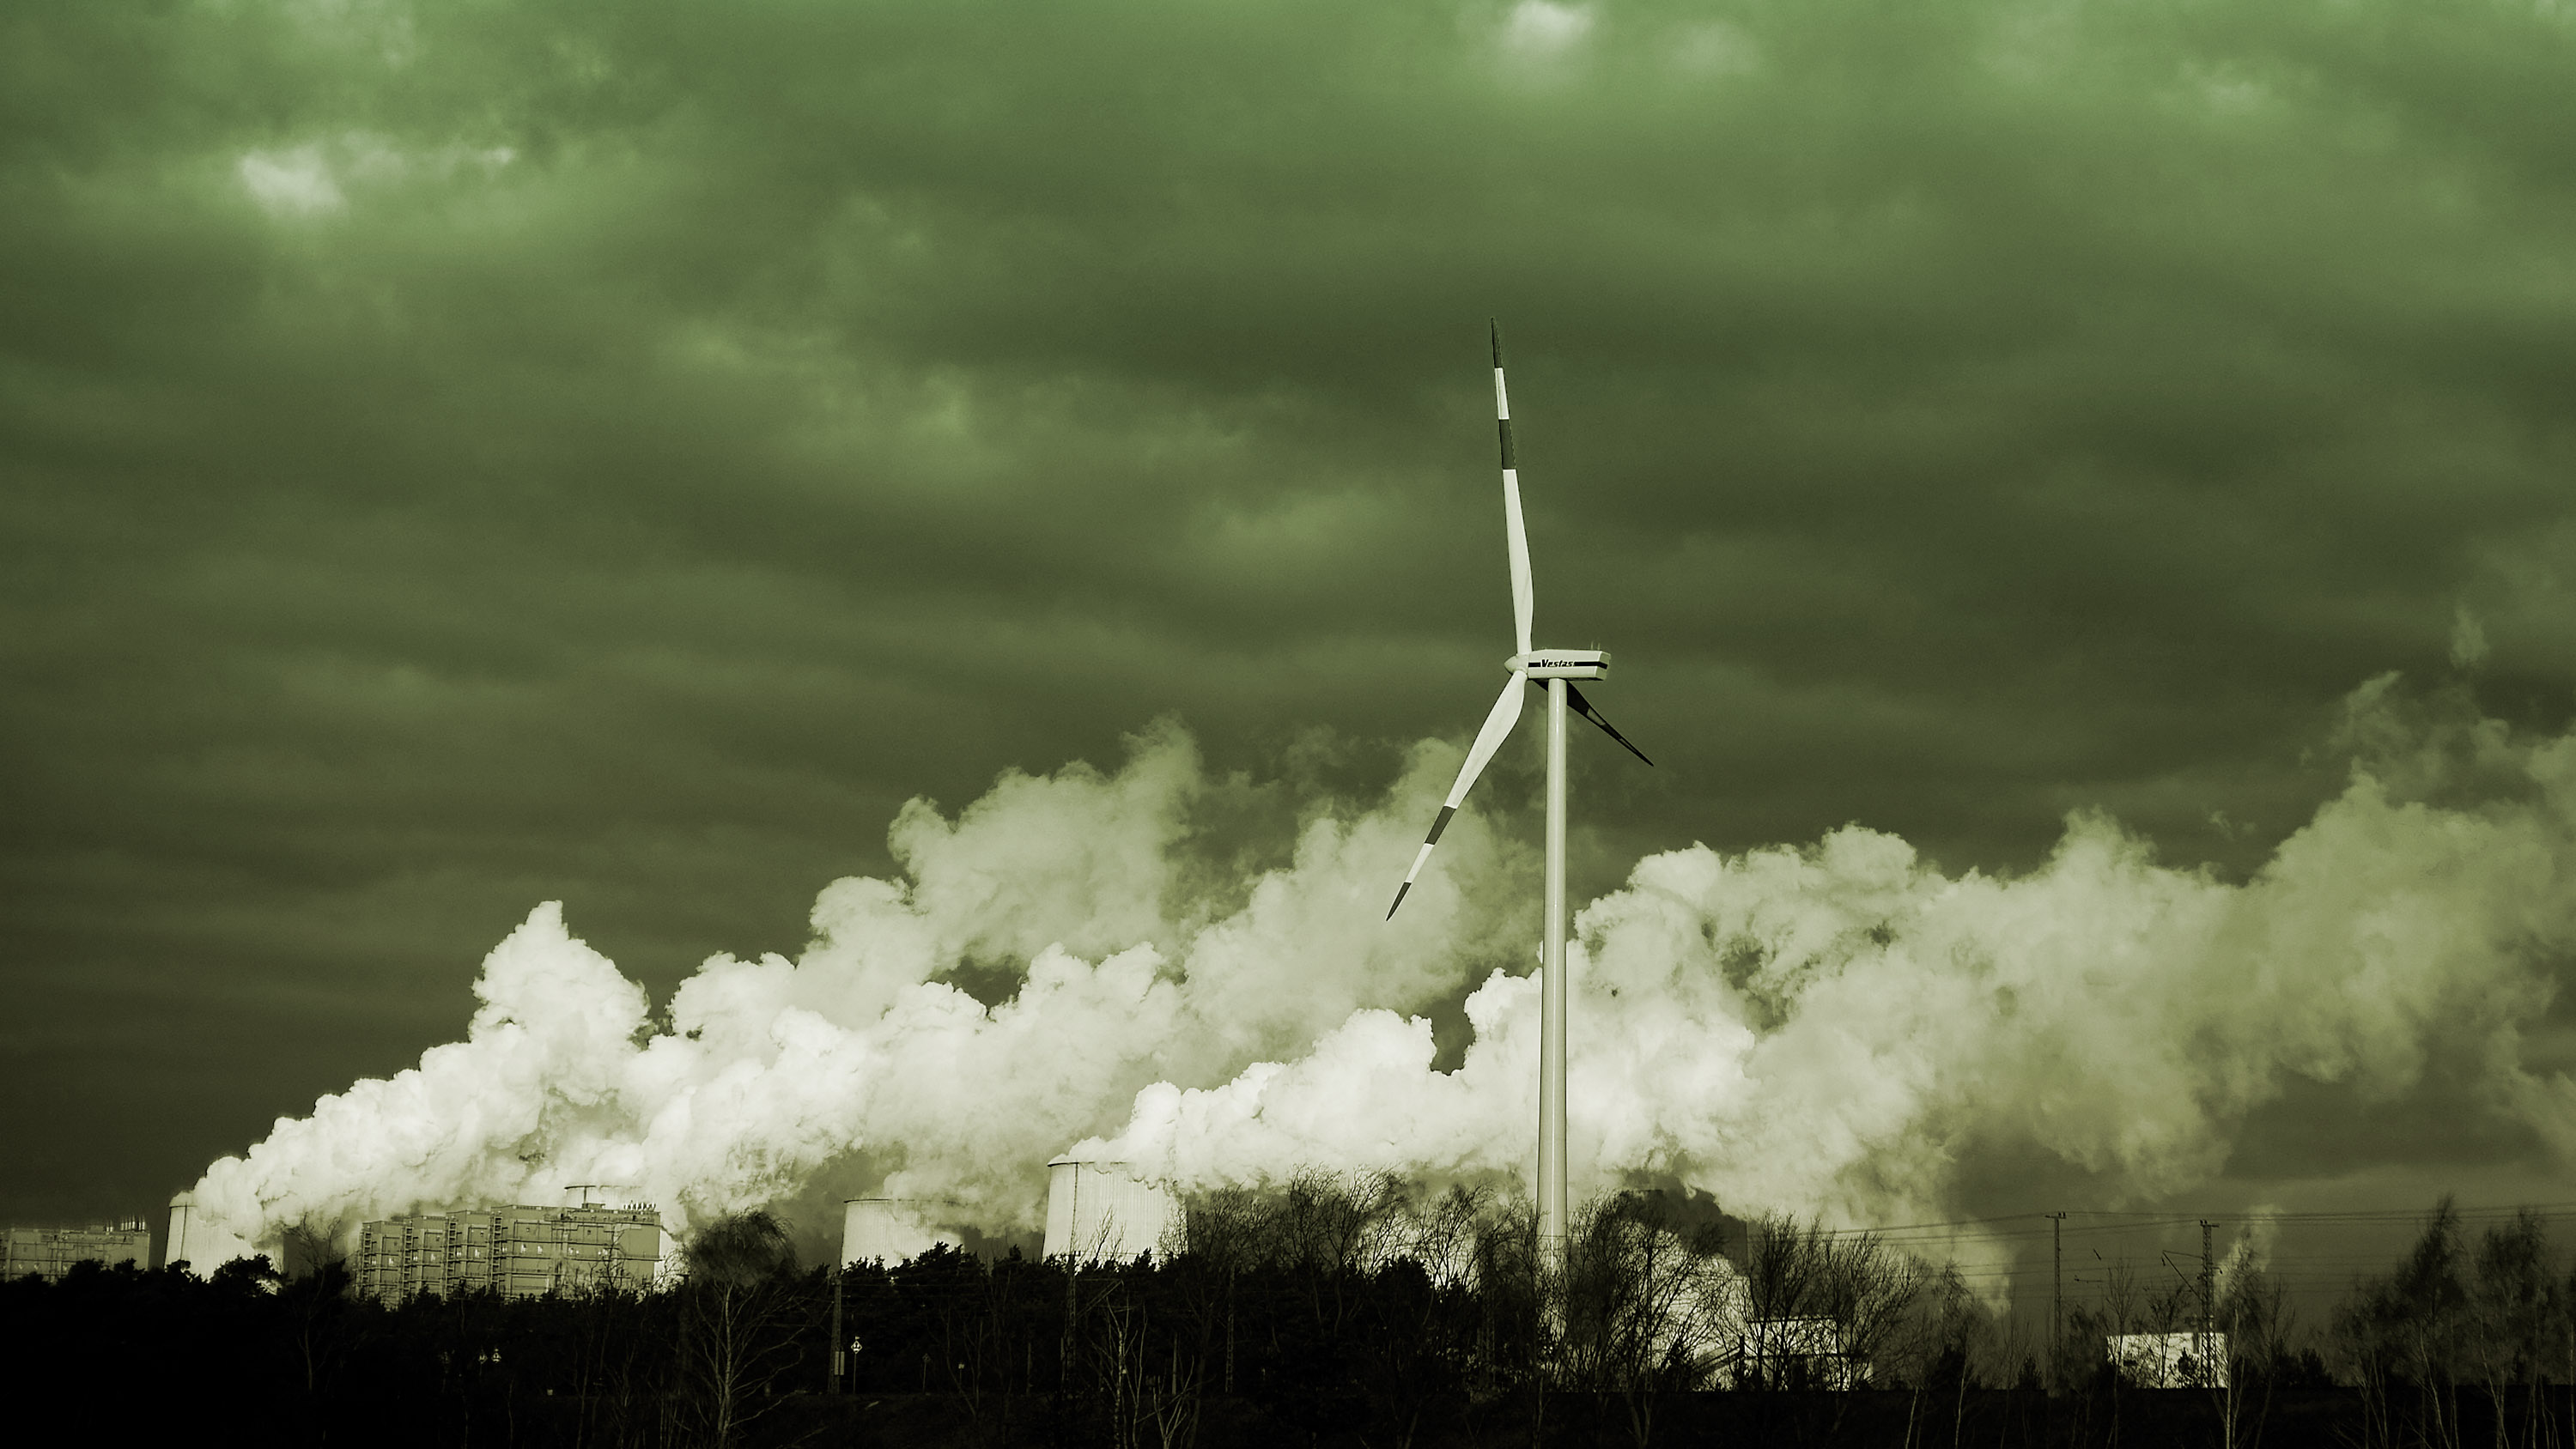 turbin angin tunggal berputar di sebelah knalpot dari pabrik industri berbahan bakar batu bara